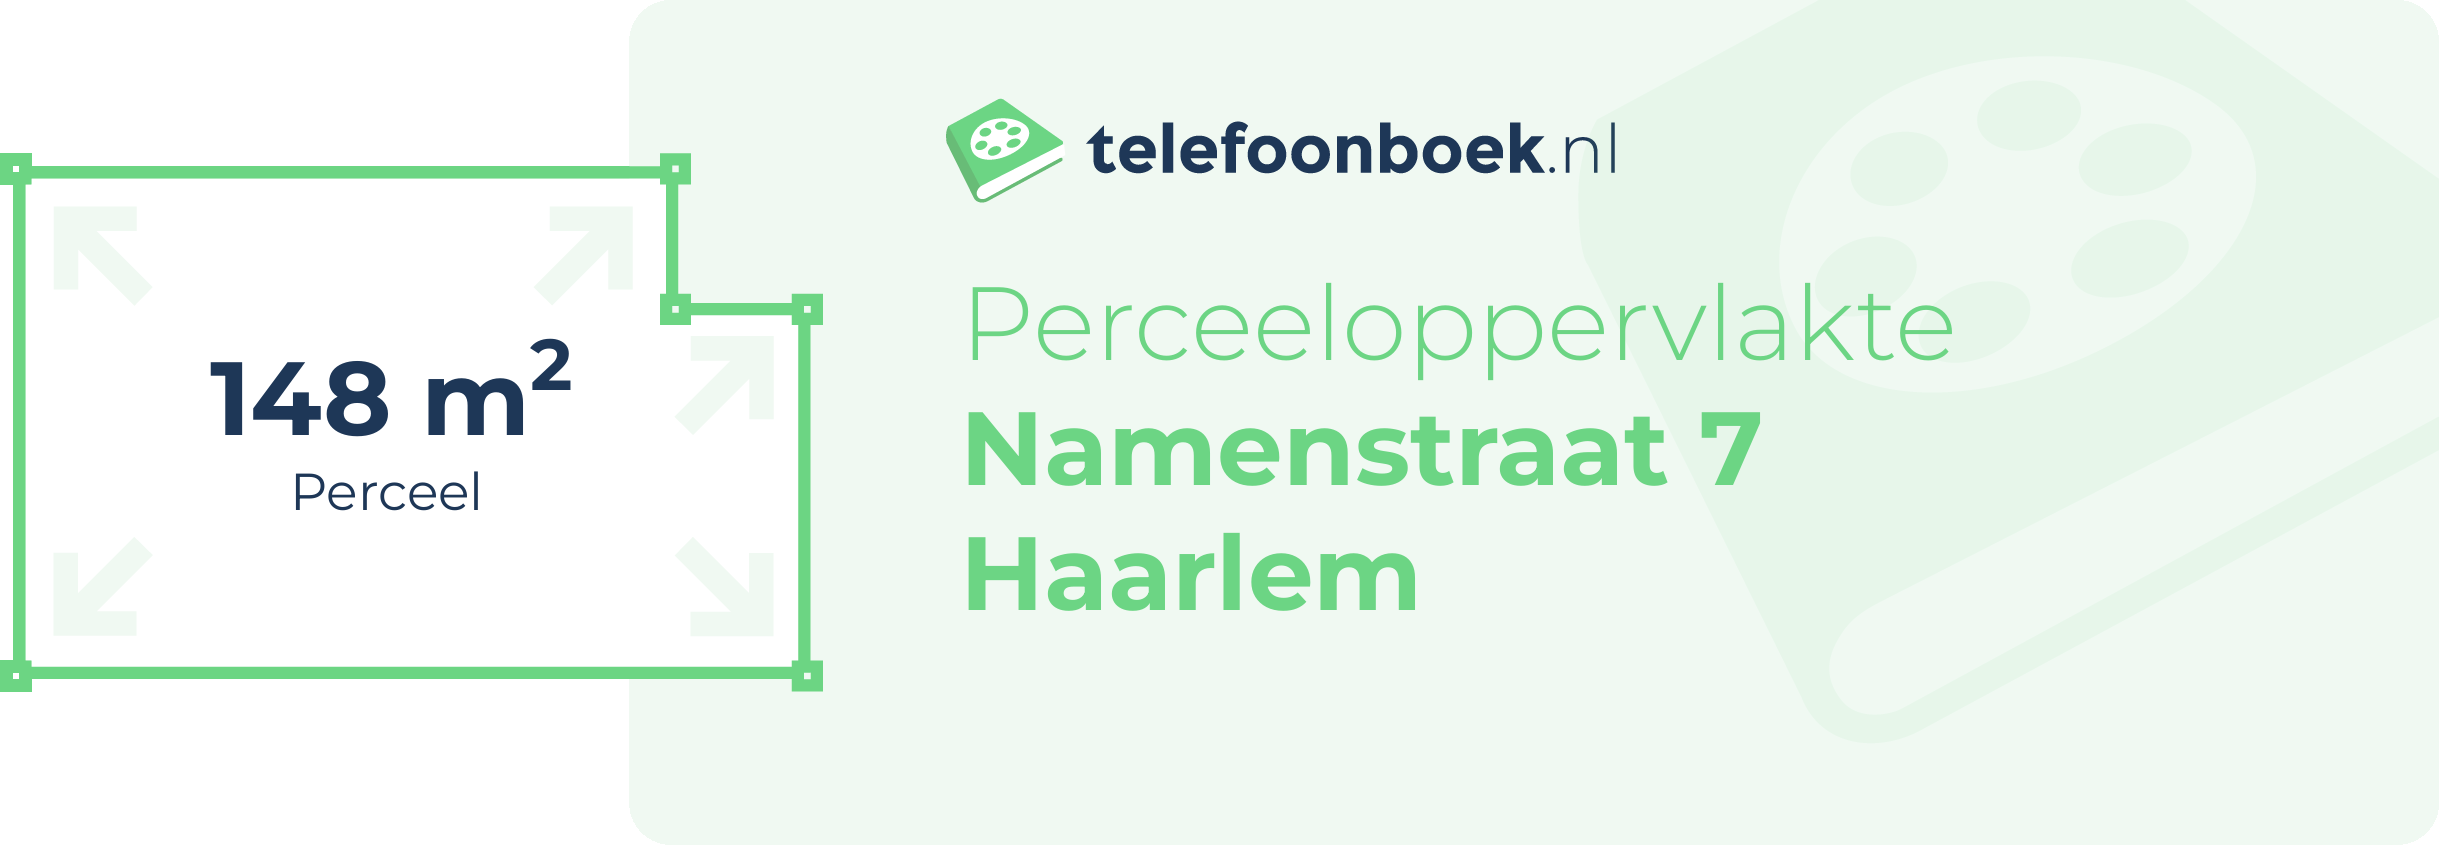 Perceeloppervlakte Namenstraat 7 Haarlem